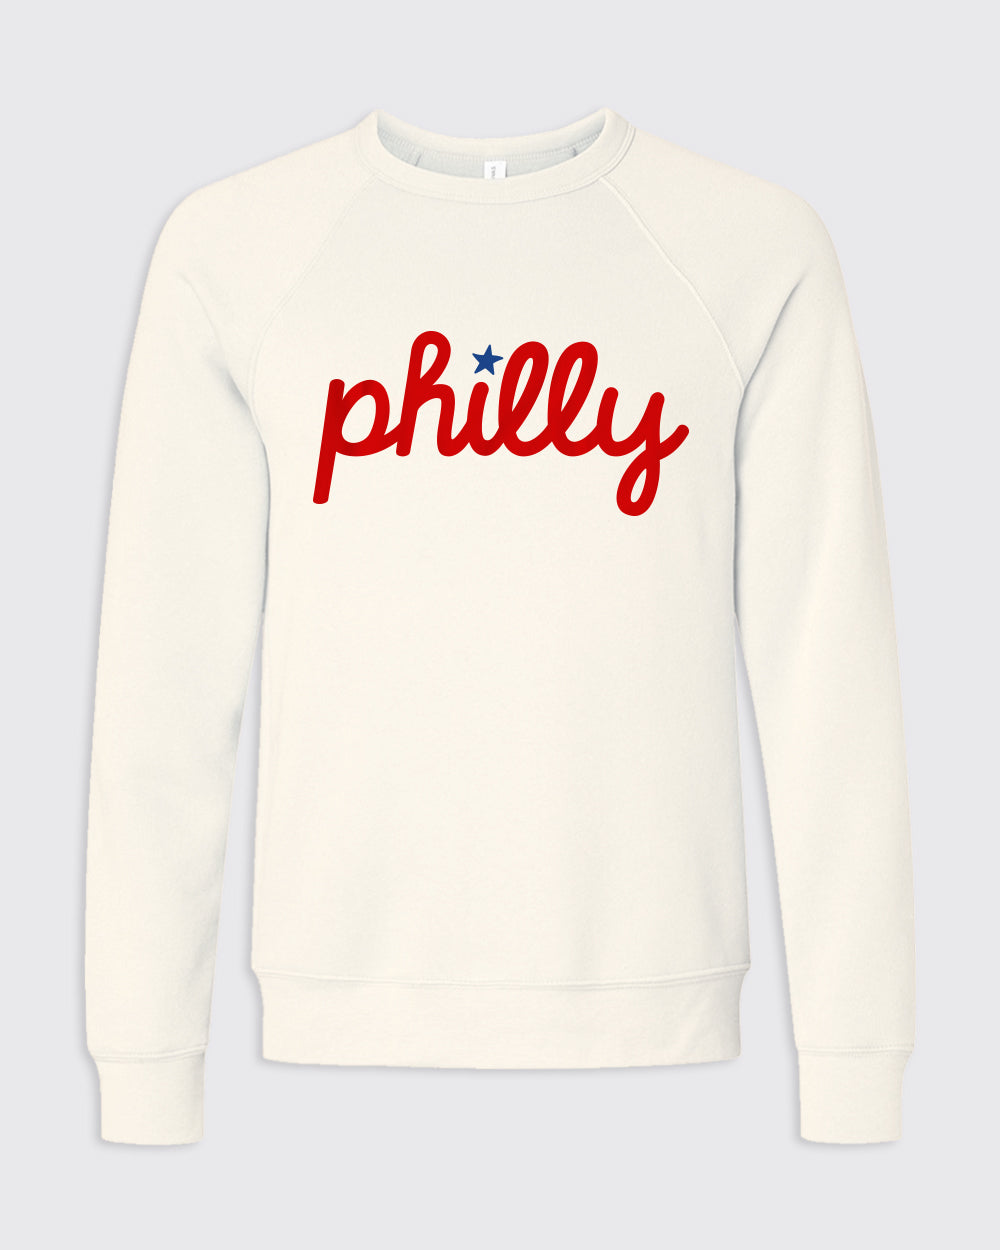 Skull Philadelphia Phillies Baseball MLB Shirt - Teespix - Store Fashion LLC